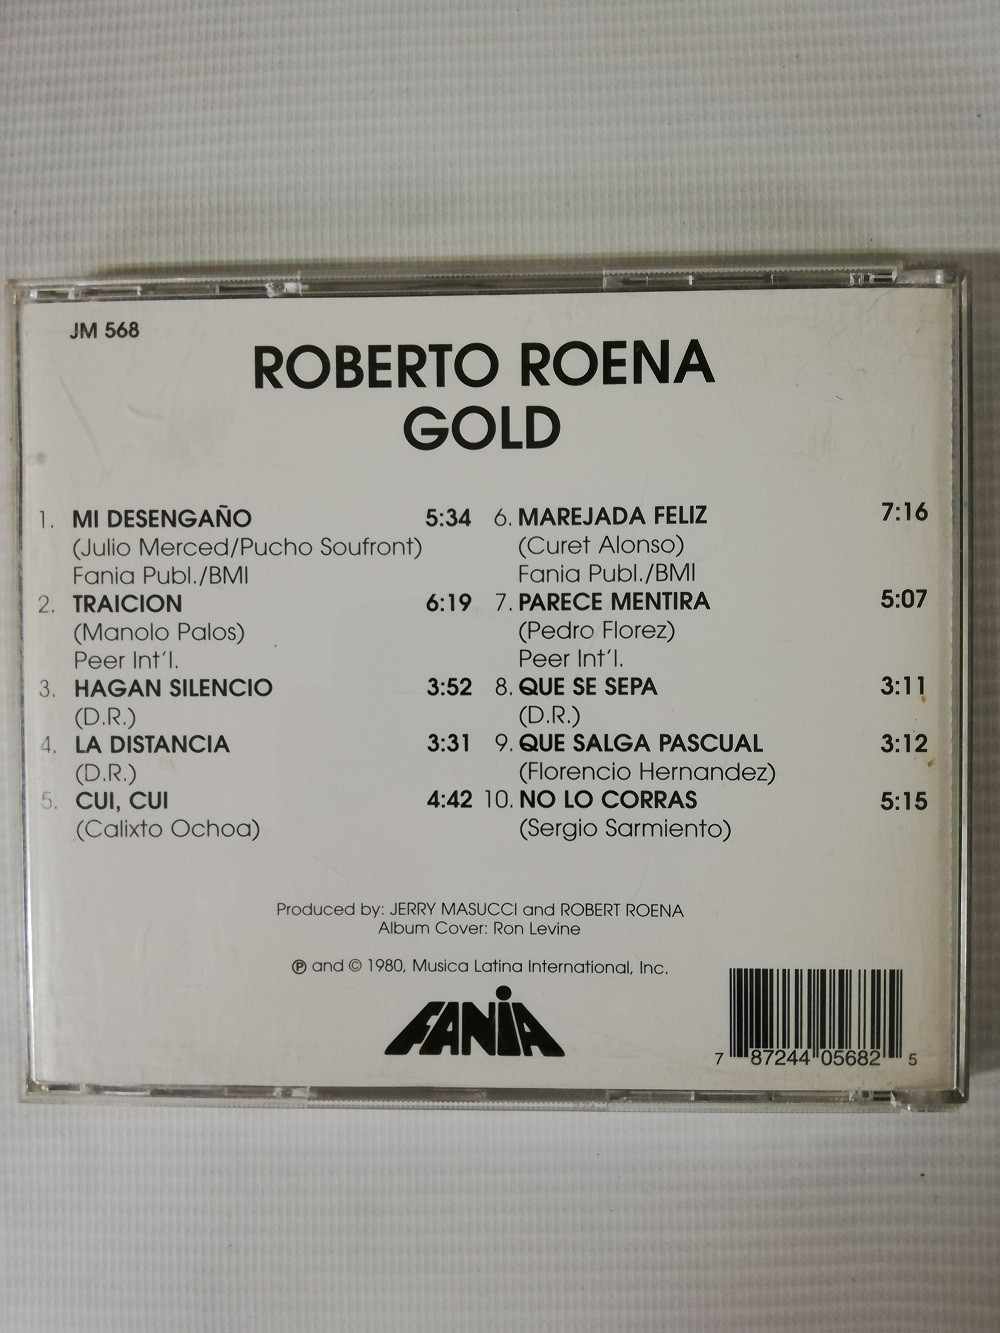 Imagen CD ROBERTO ROENA - GOLD 2